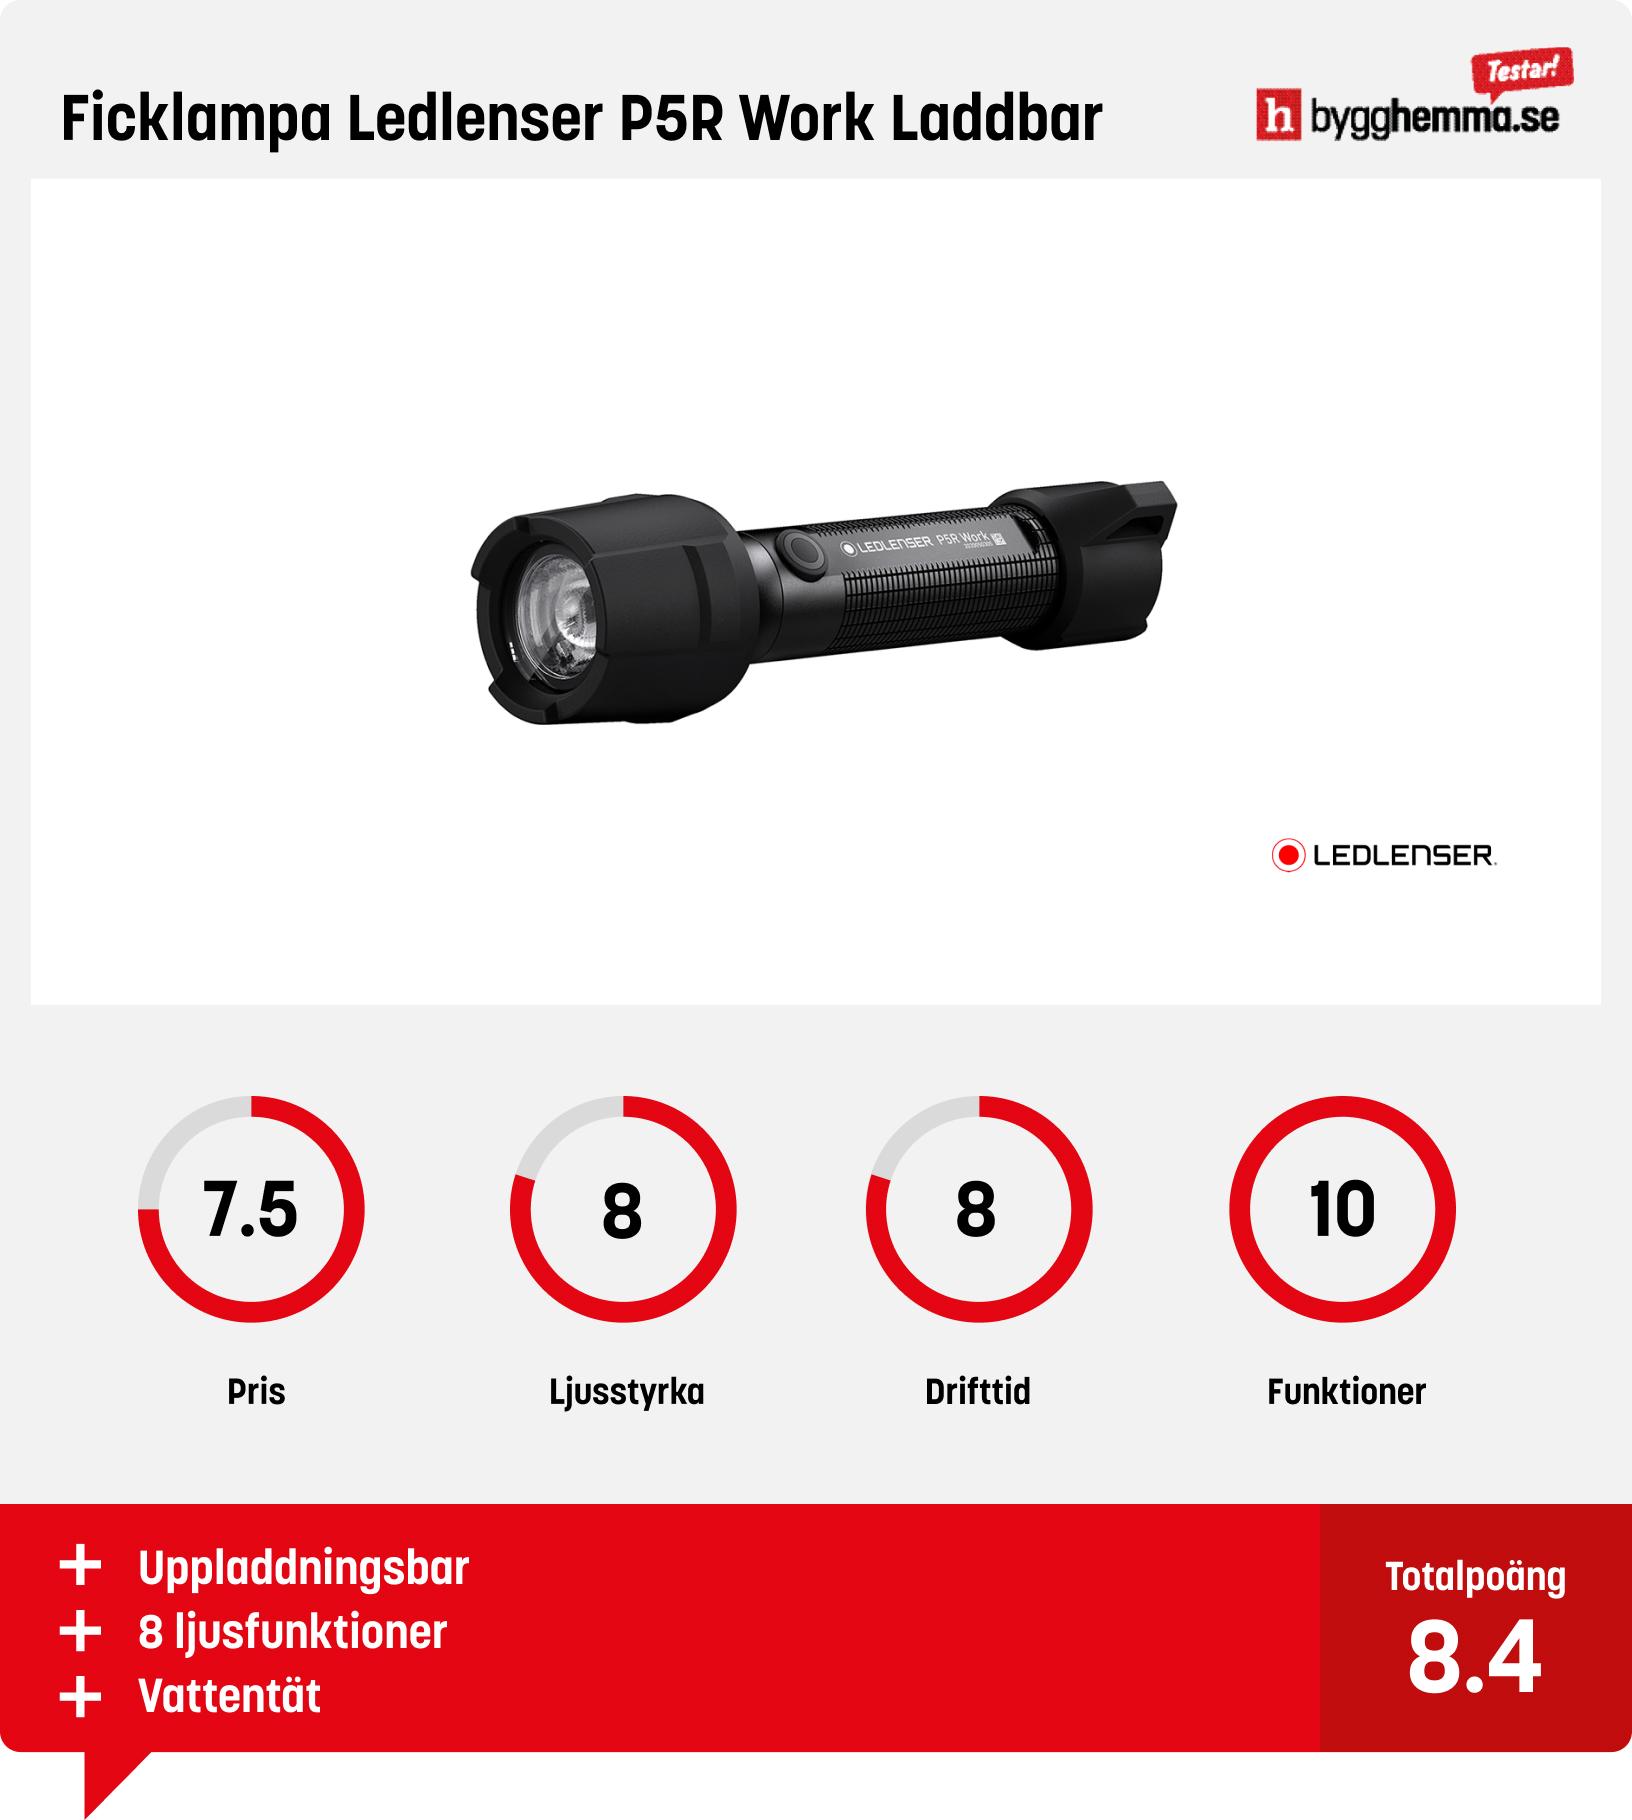 Bästa ficklampa - Ficklampa Ledlenser P5R Work Laddbar